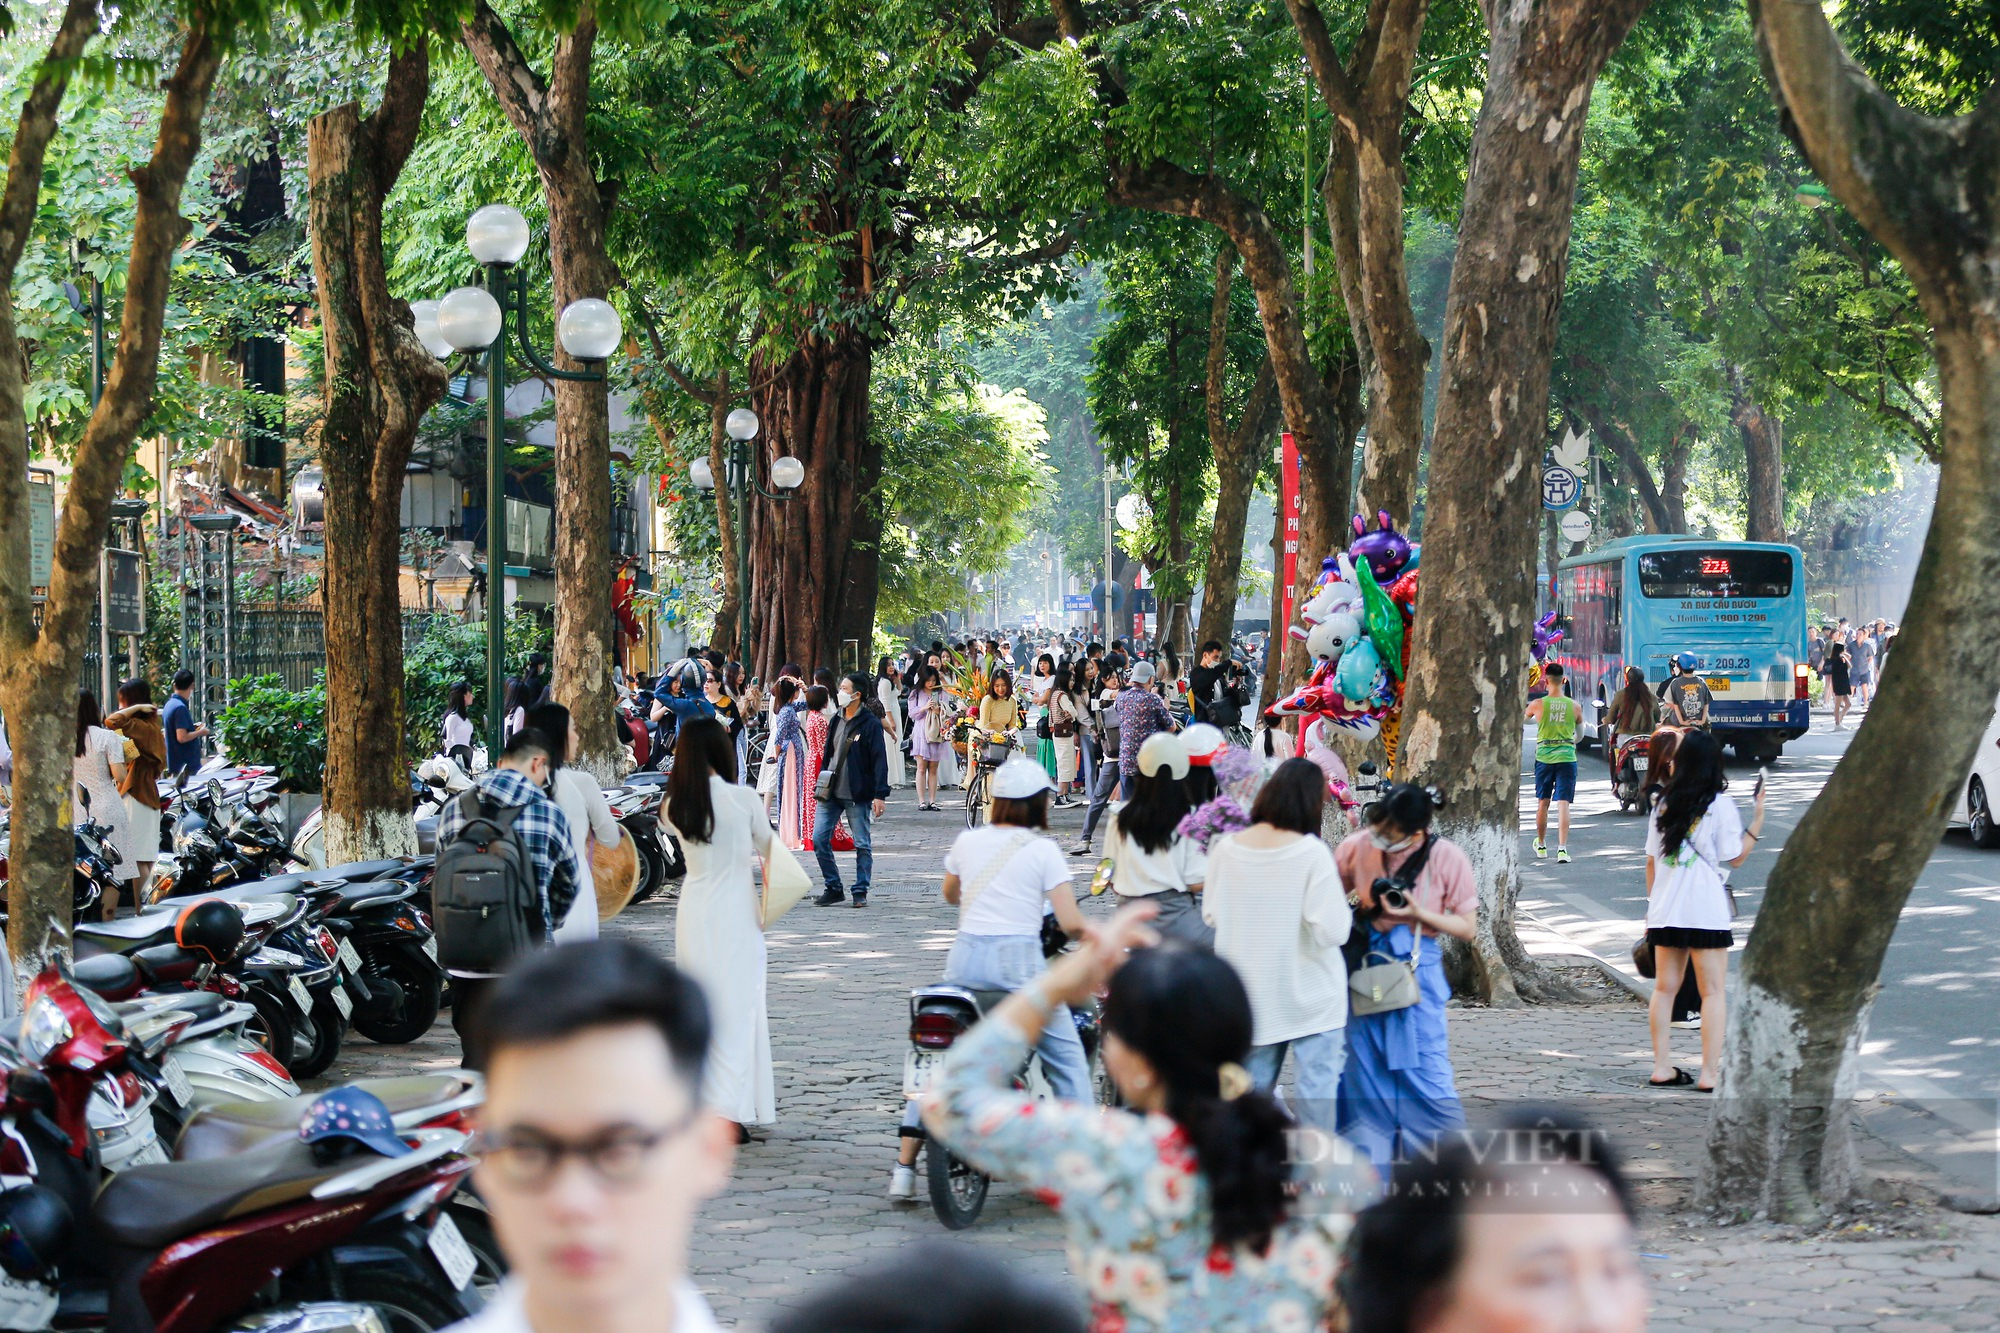 Những bức ảnh đương phố ở Hà Nội sẽ khiến bạn bị thu hút ngay lập tức! Hãy chiêm ngưỡng vẻ đẹp phức tạp của con phố cổ trầm lắng và sự phấn khích bên đường phố ồn ào và đầy sức sống. Tận hưởng những góc phố độc đáo với tấm ảnh của chúng tôi.